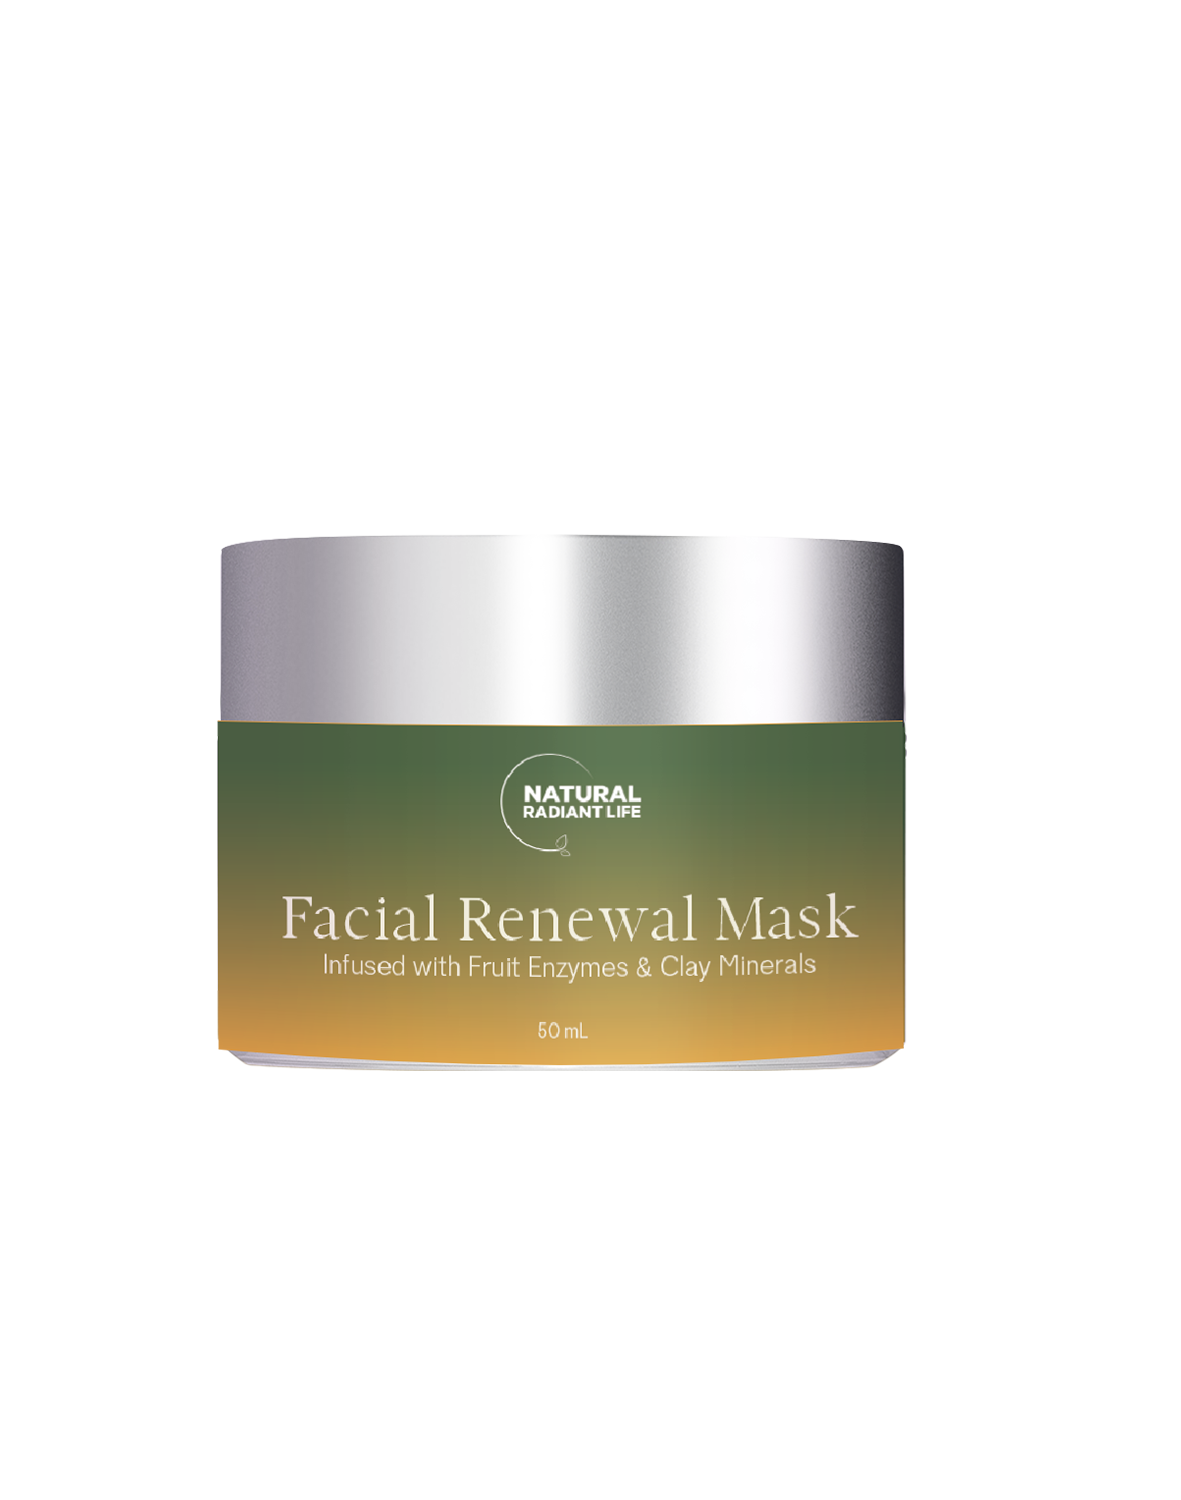 Detoxifying Clay Mask - Facial Renewal Mask